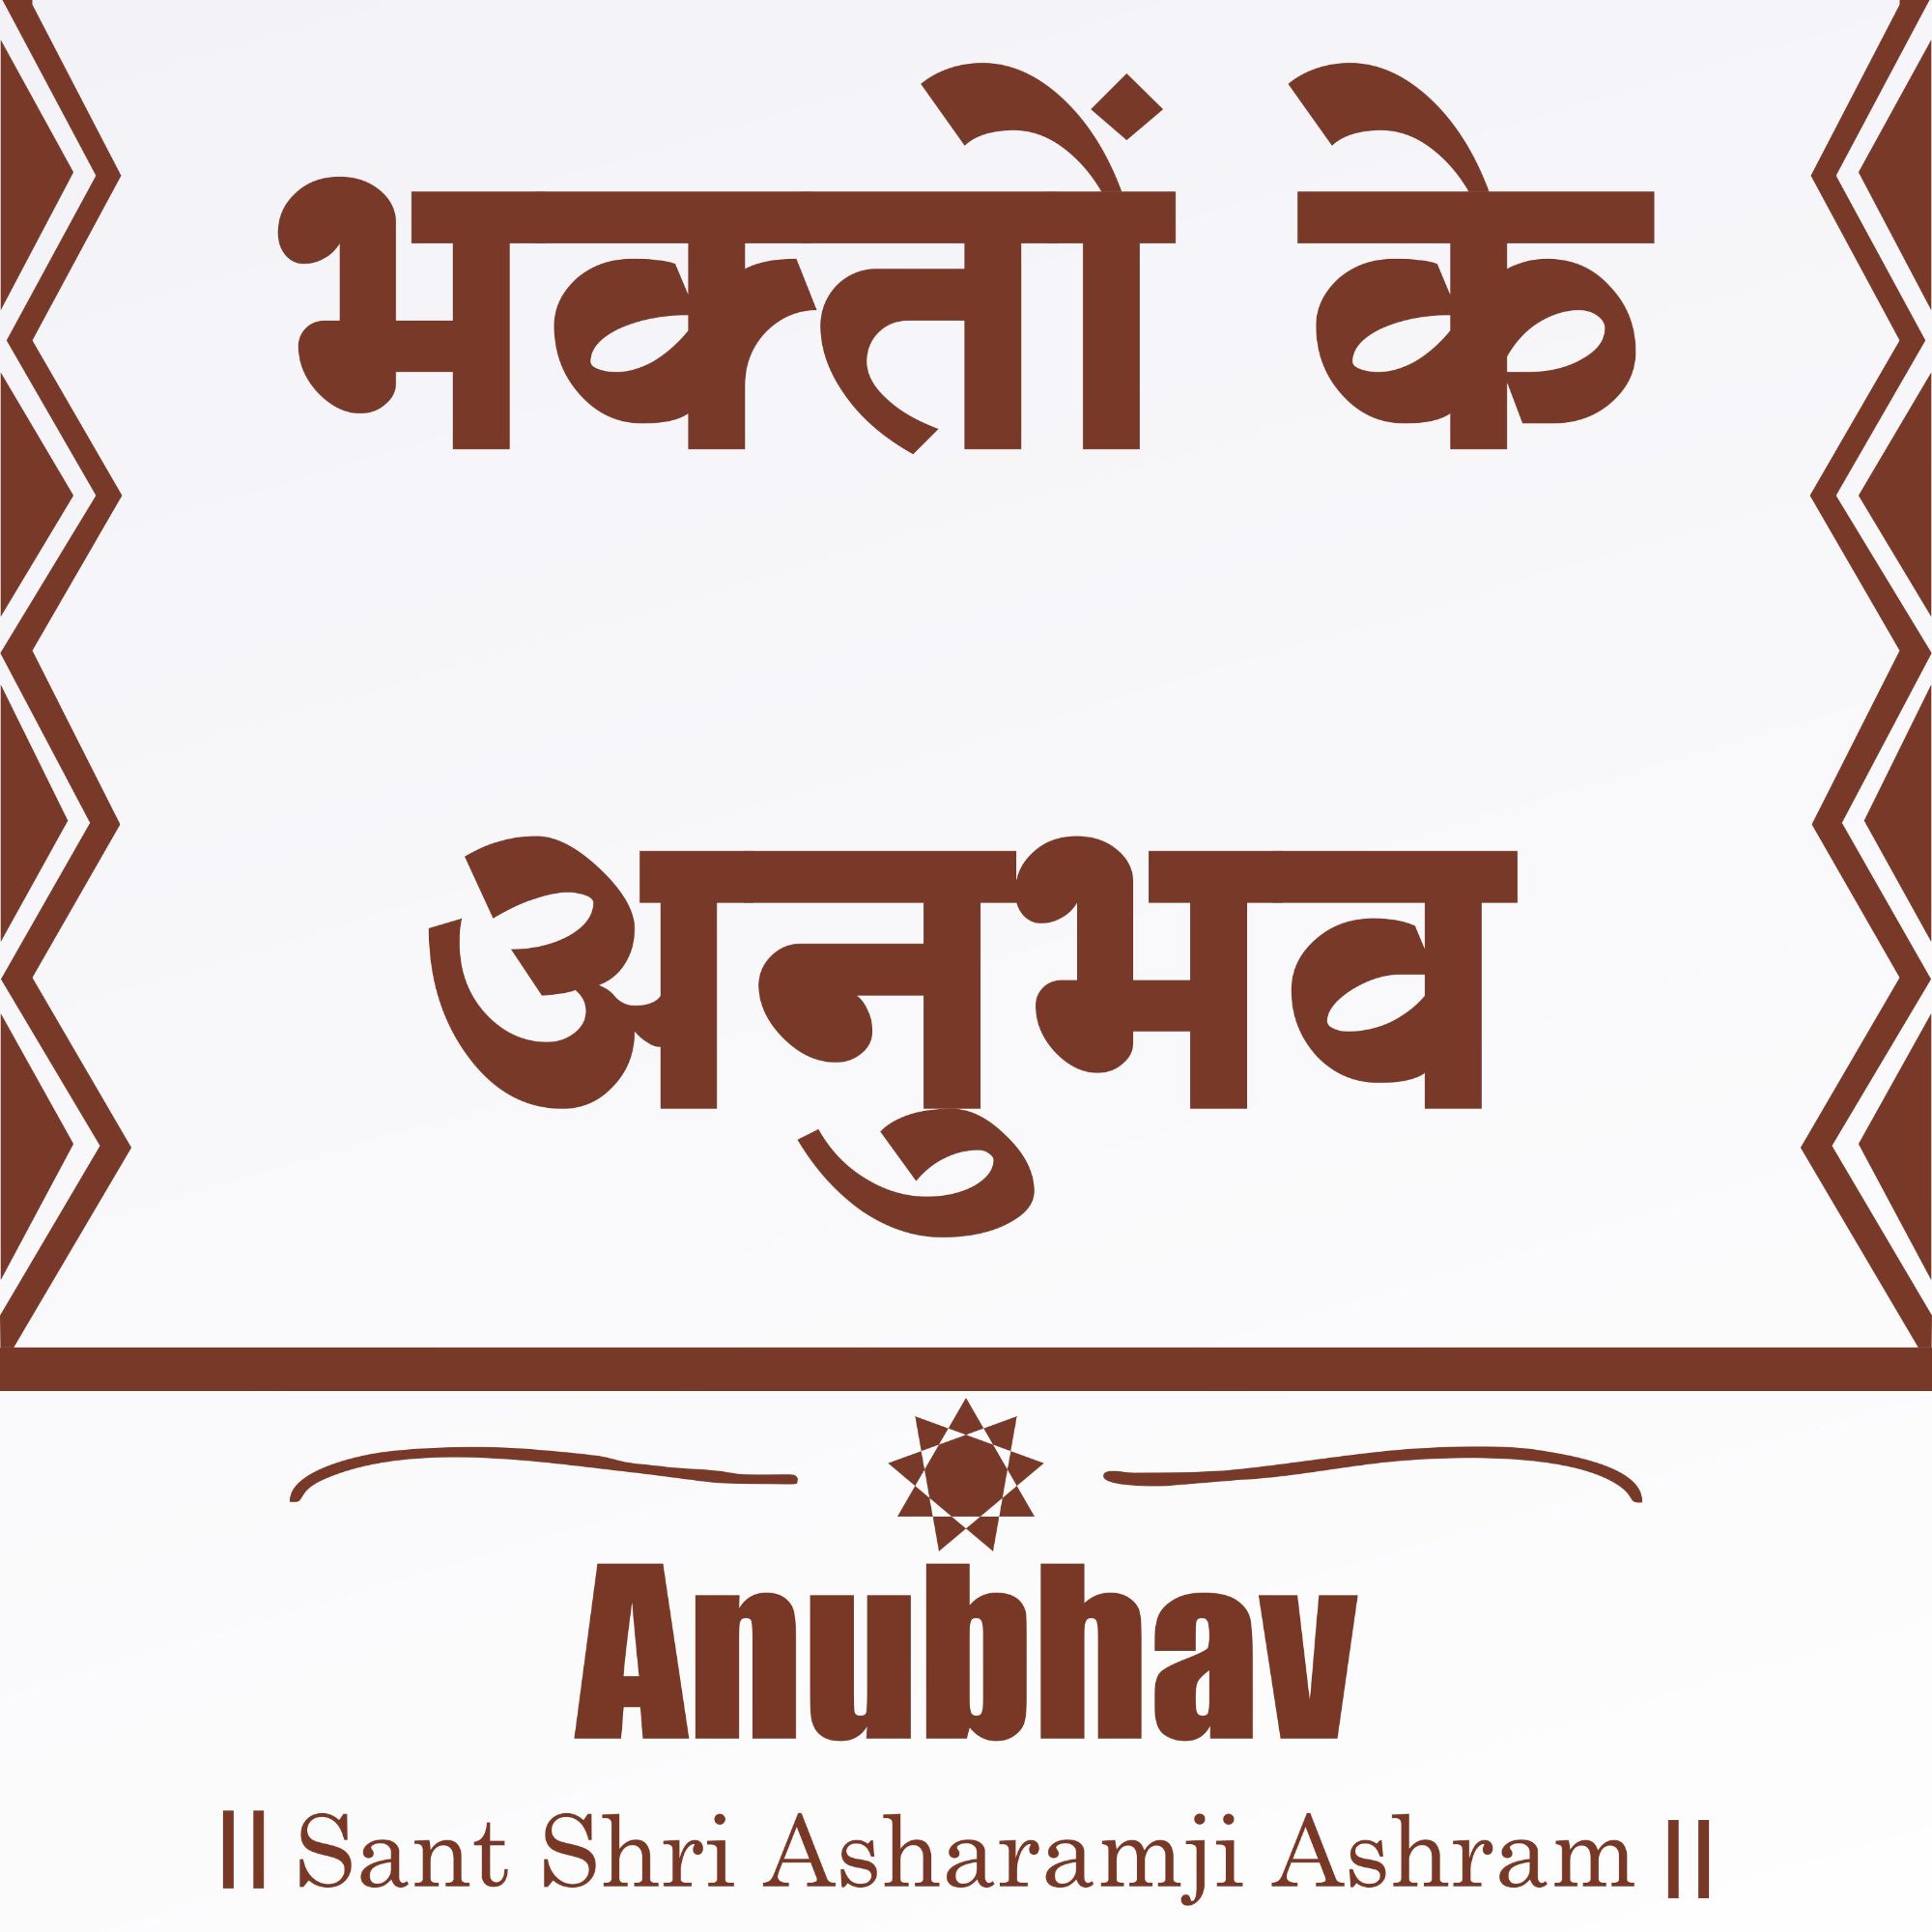 Anubhav - Sant Shri Asharamji Bapu Anubhav